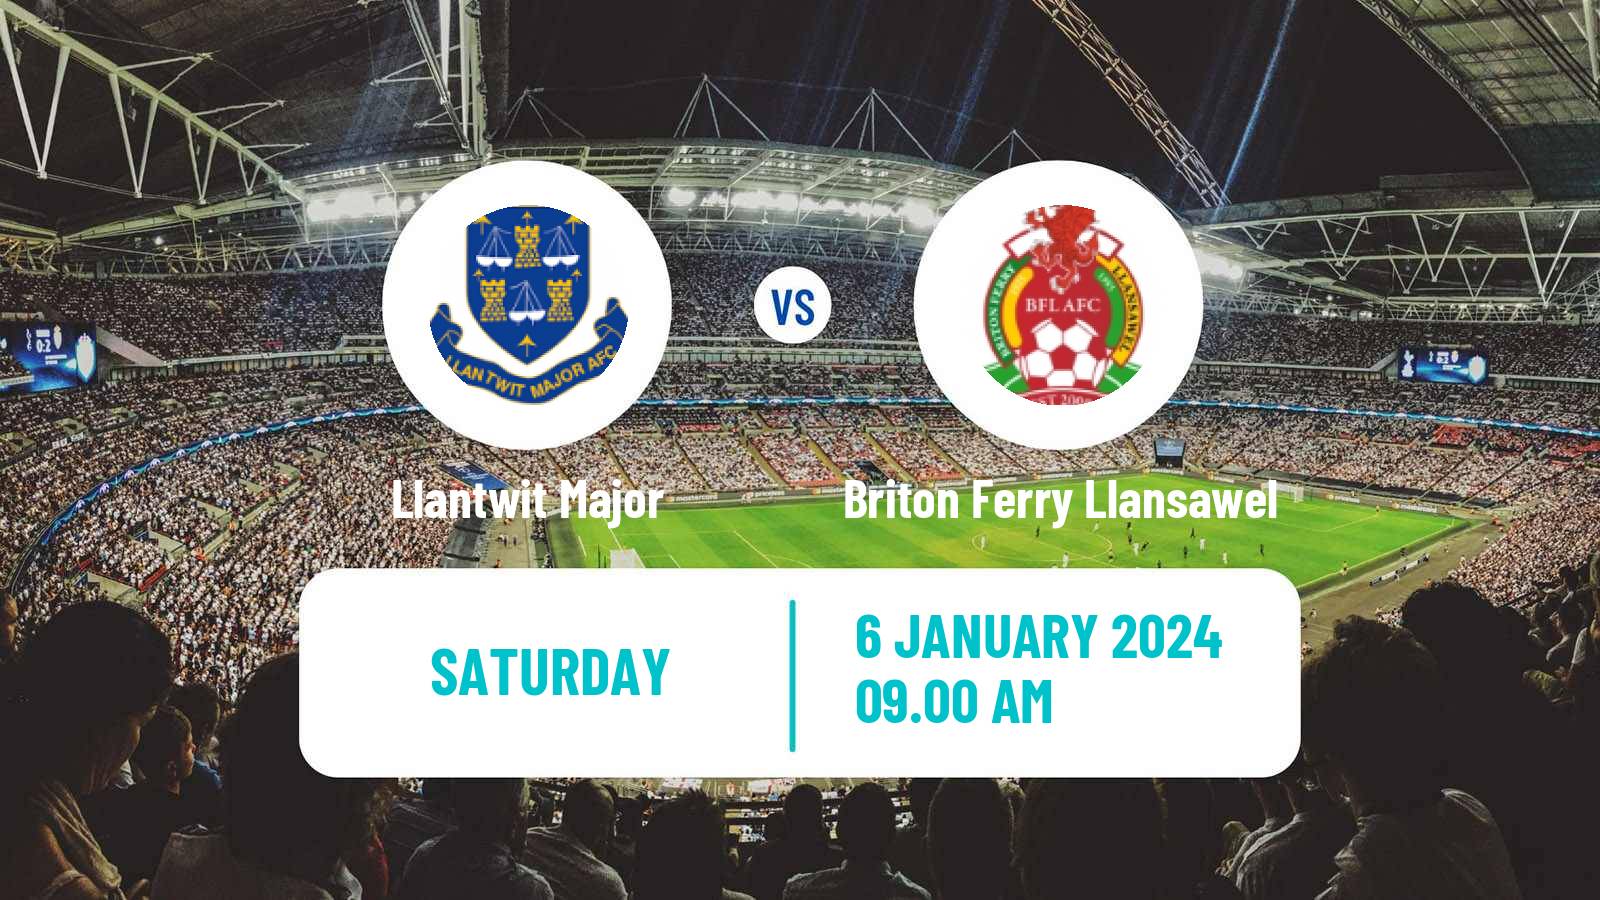 Soccer Welsh Cymru South Llantwit Major - Briton Ferry Llansawel